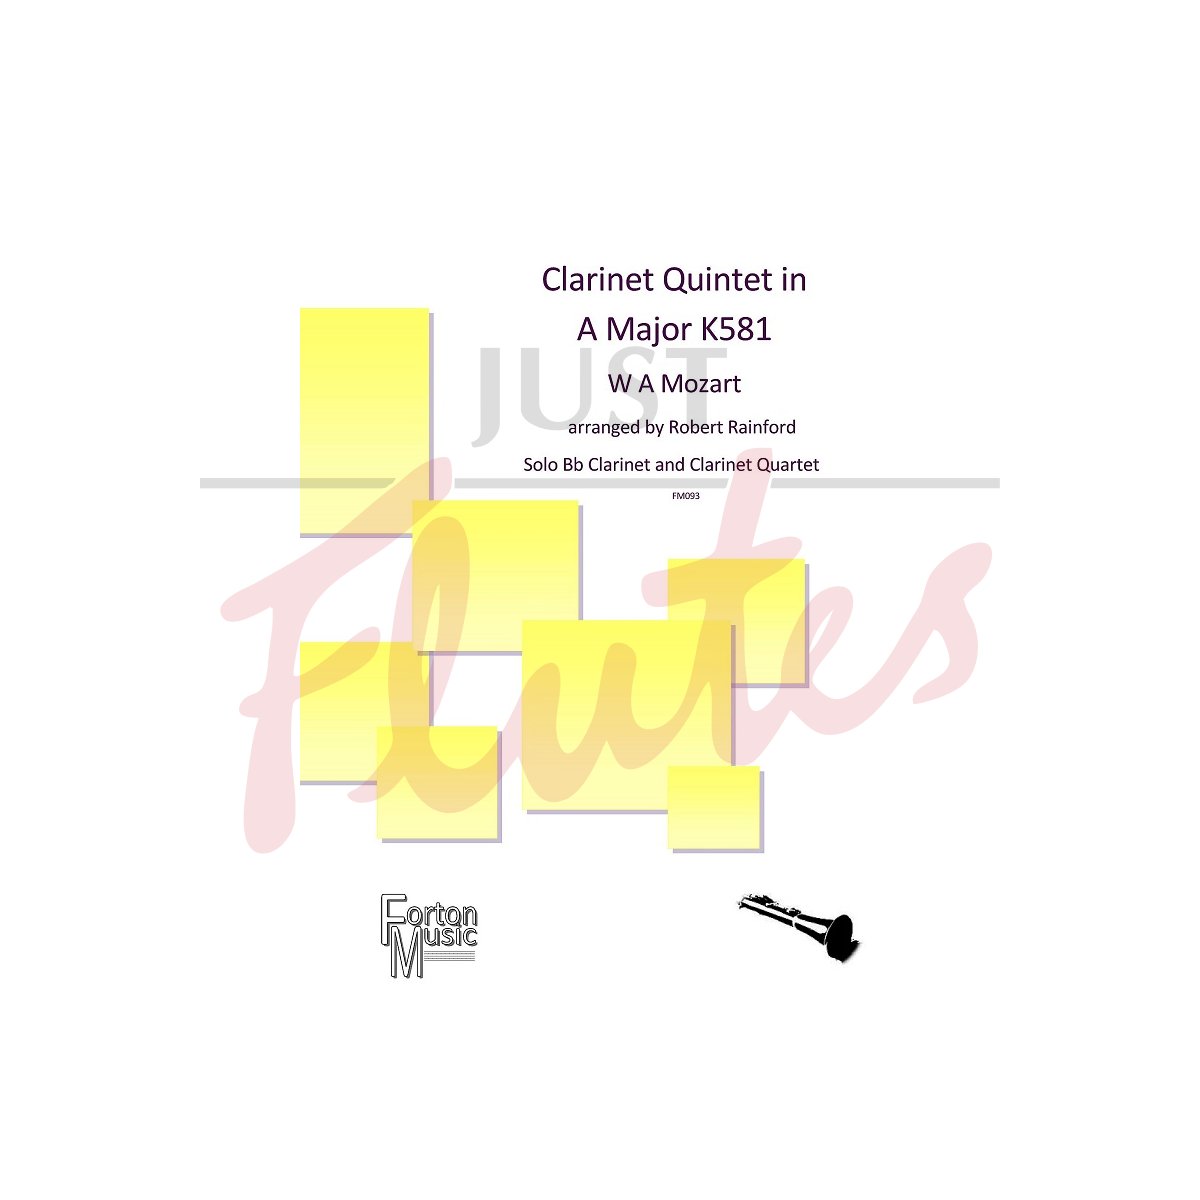 Clarinet Quintet in A major